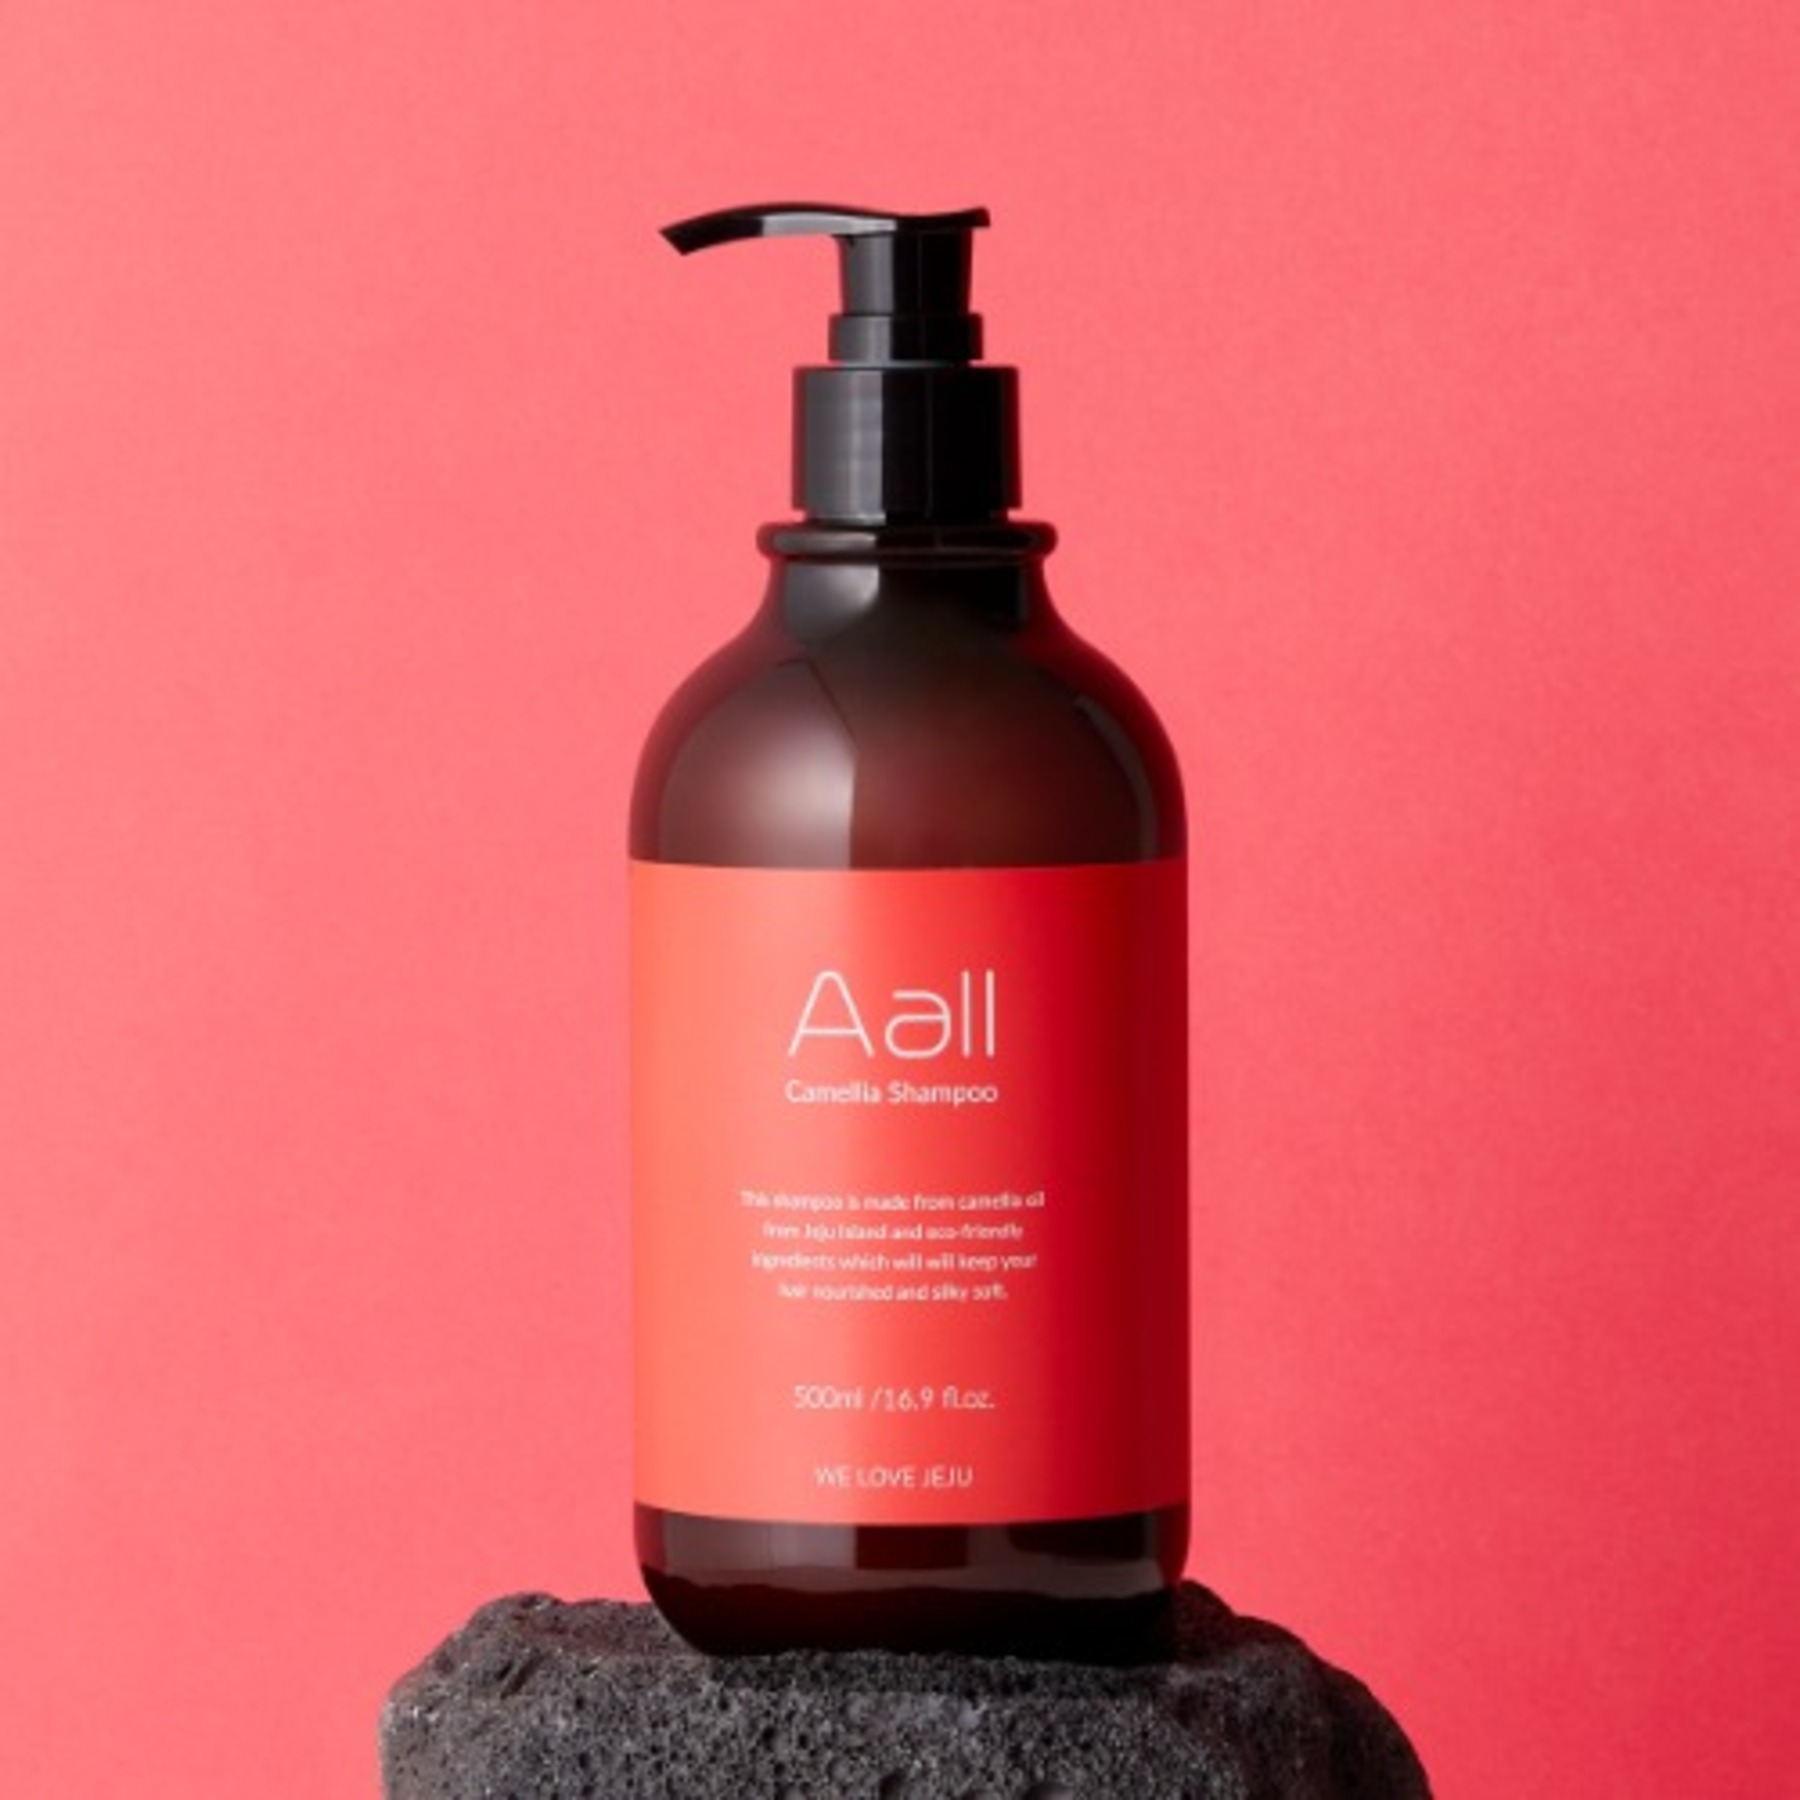 에이올 제주 동백 천연 샴푸 500ml (Aall Camellia Shampoo)